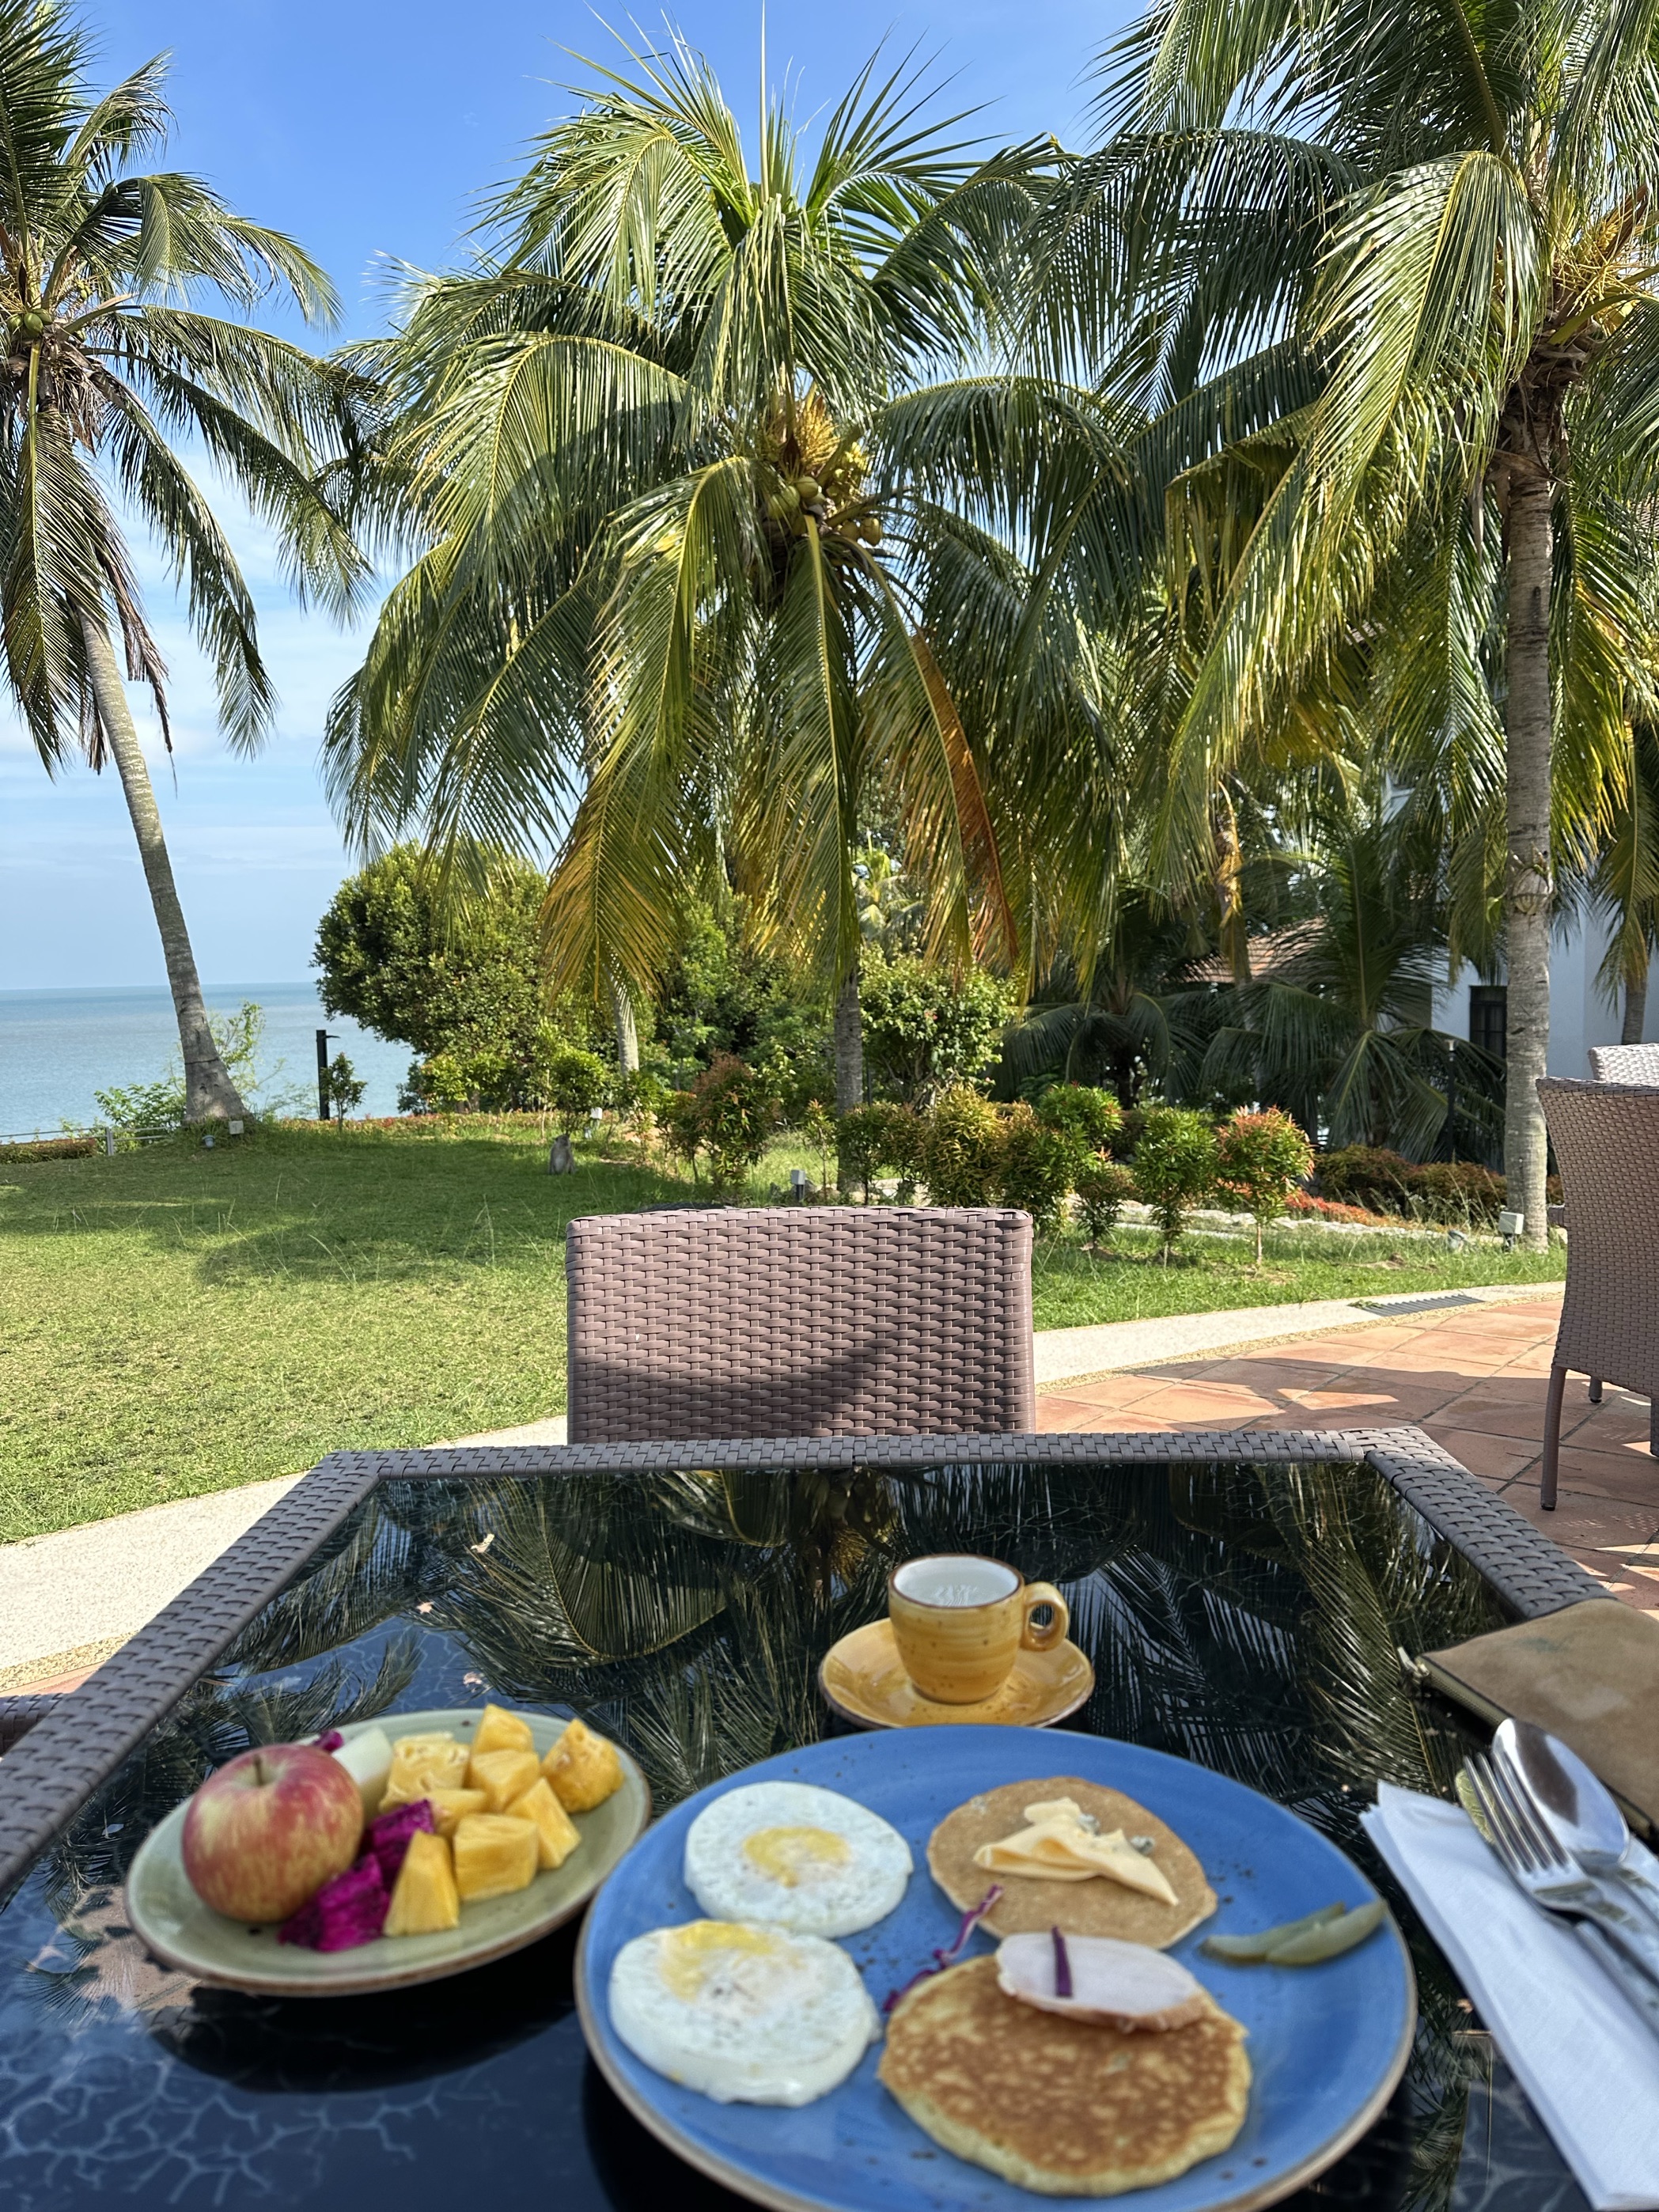 在海边十分安静的一个酒店 早餐如果坐室外 时 偶尔还会有小猴子出没 酒店有很多设施可提供给游客 对国